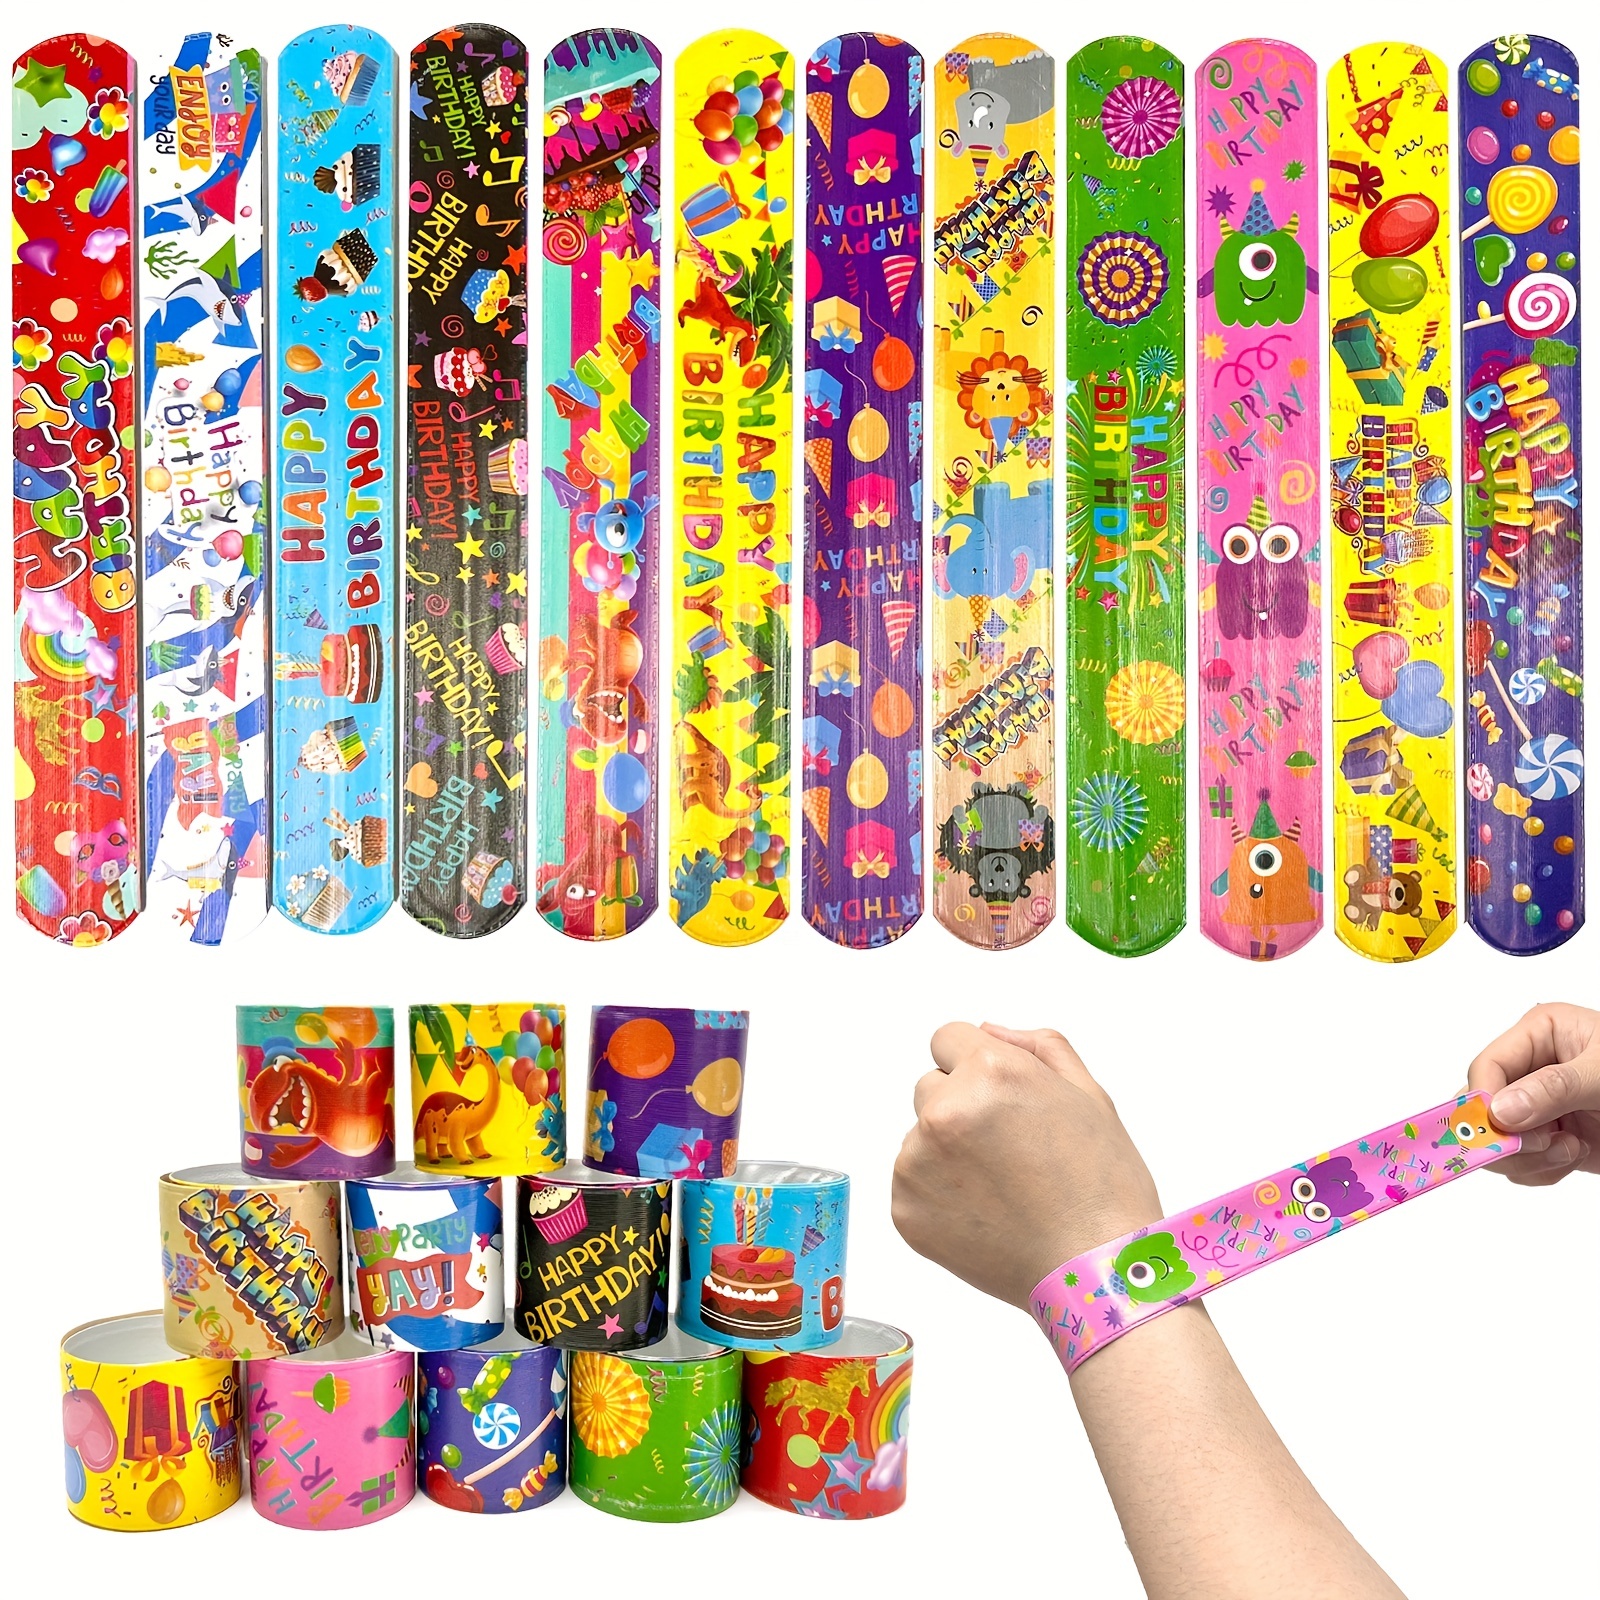 100 pulseras de bofetada con corazones coloridos, diseño de animales,  bandas retro para niños y adultos, regalos de cumpleaños en el aula (100